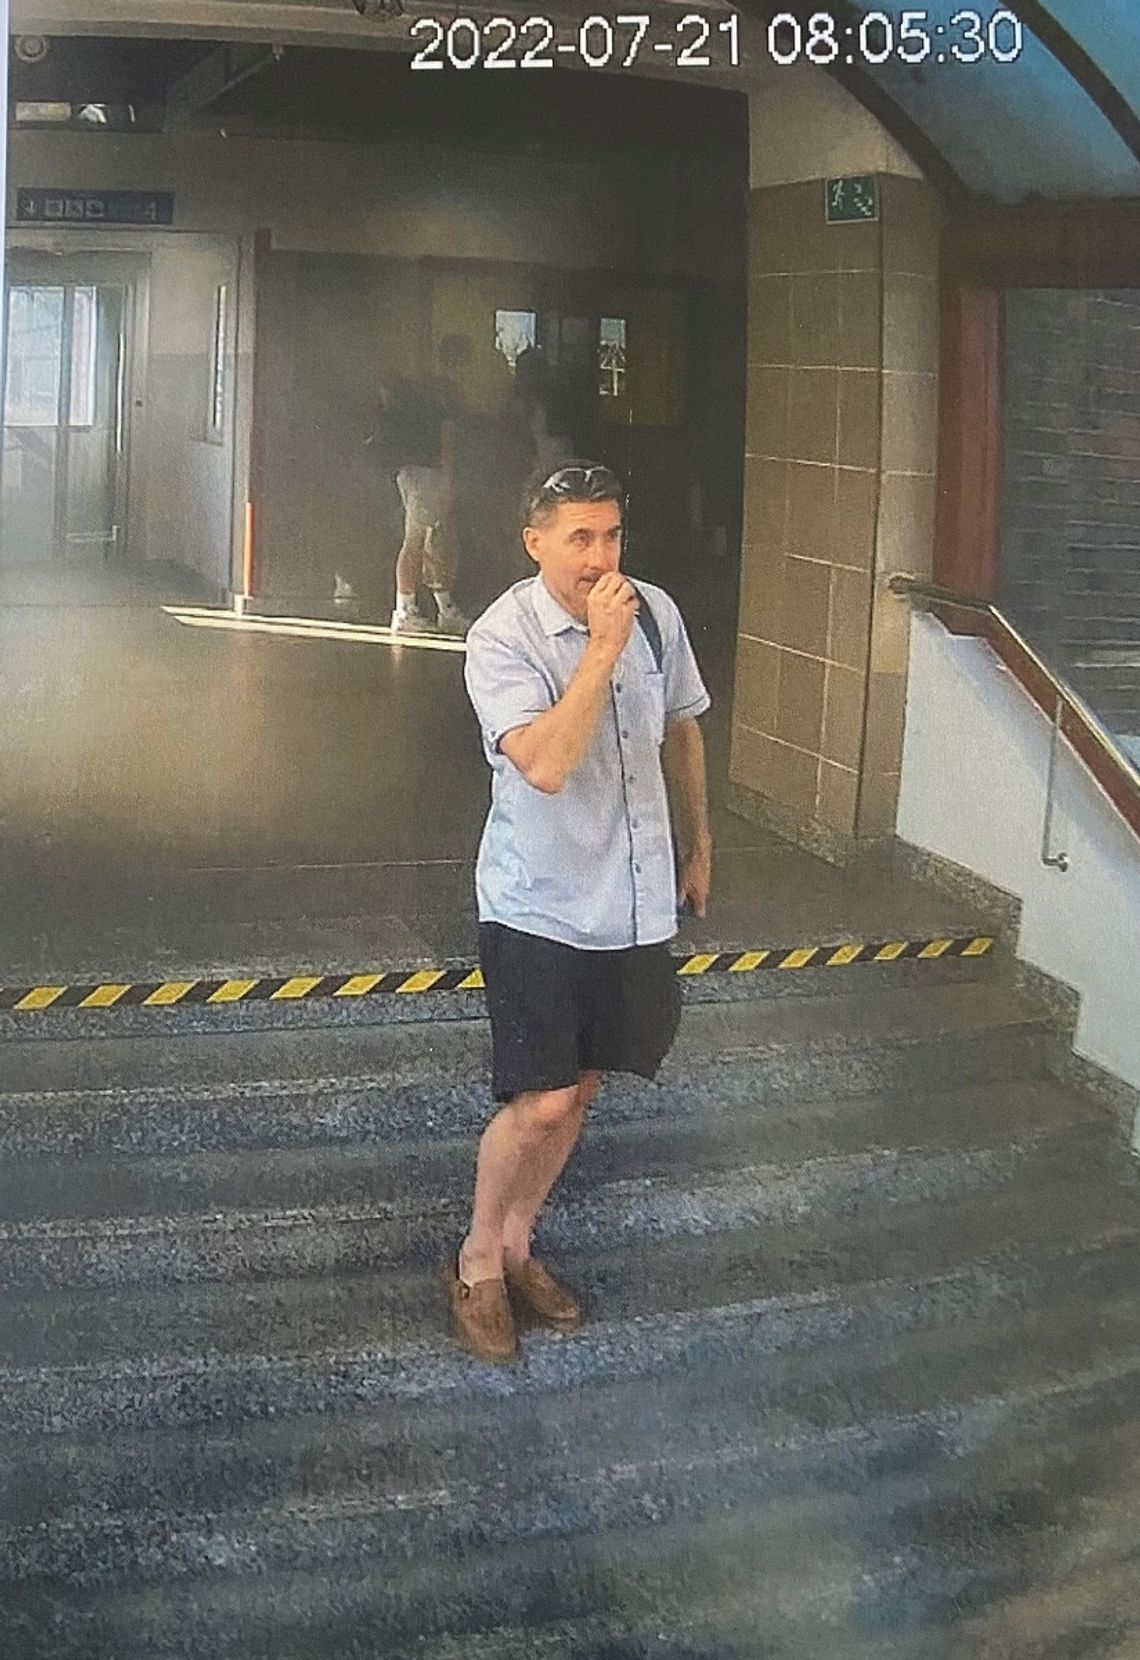 Zniszczył szyby klatki schodowej na stacji PKP w Tczewie. Poznajesz tego mężczyznę ?